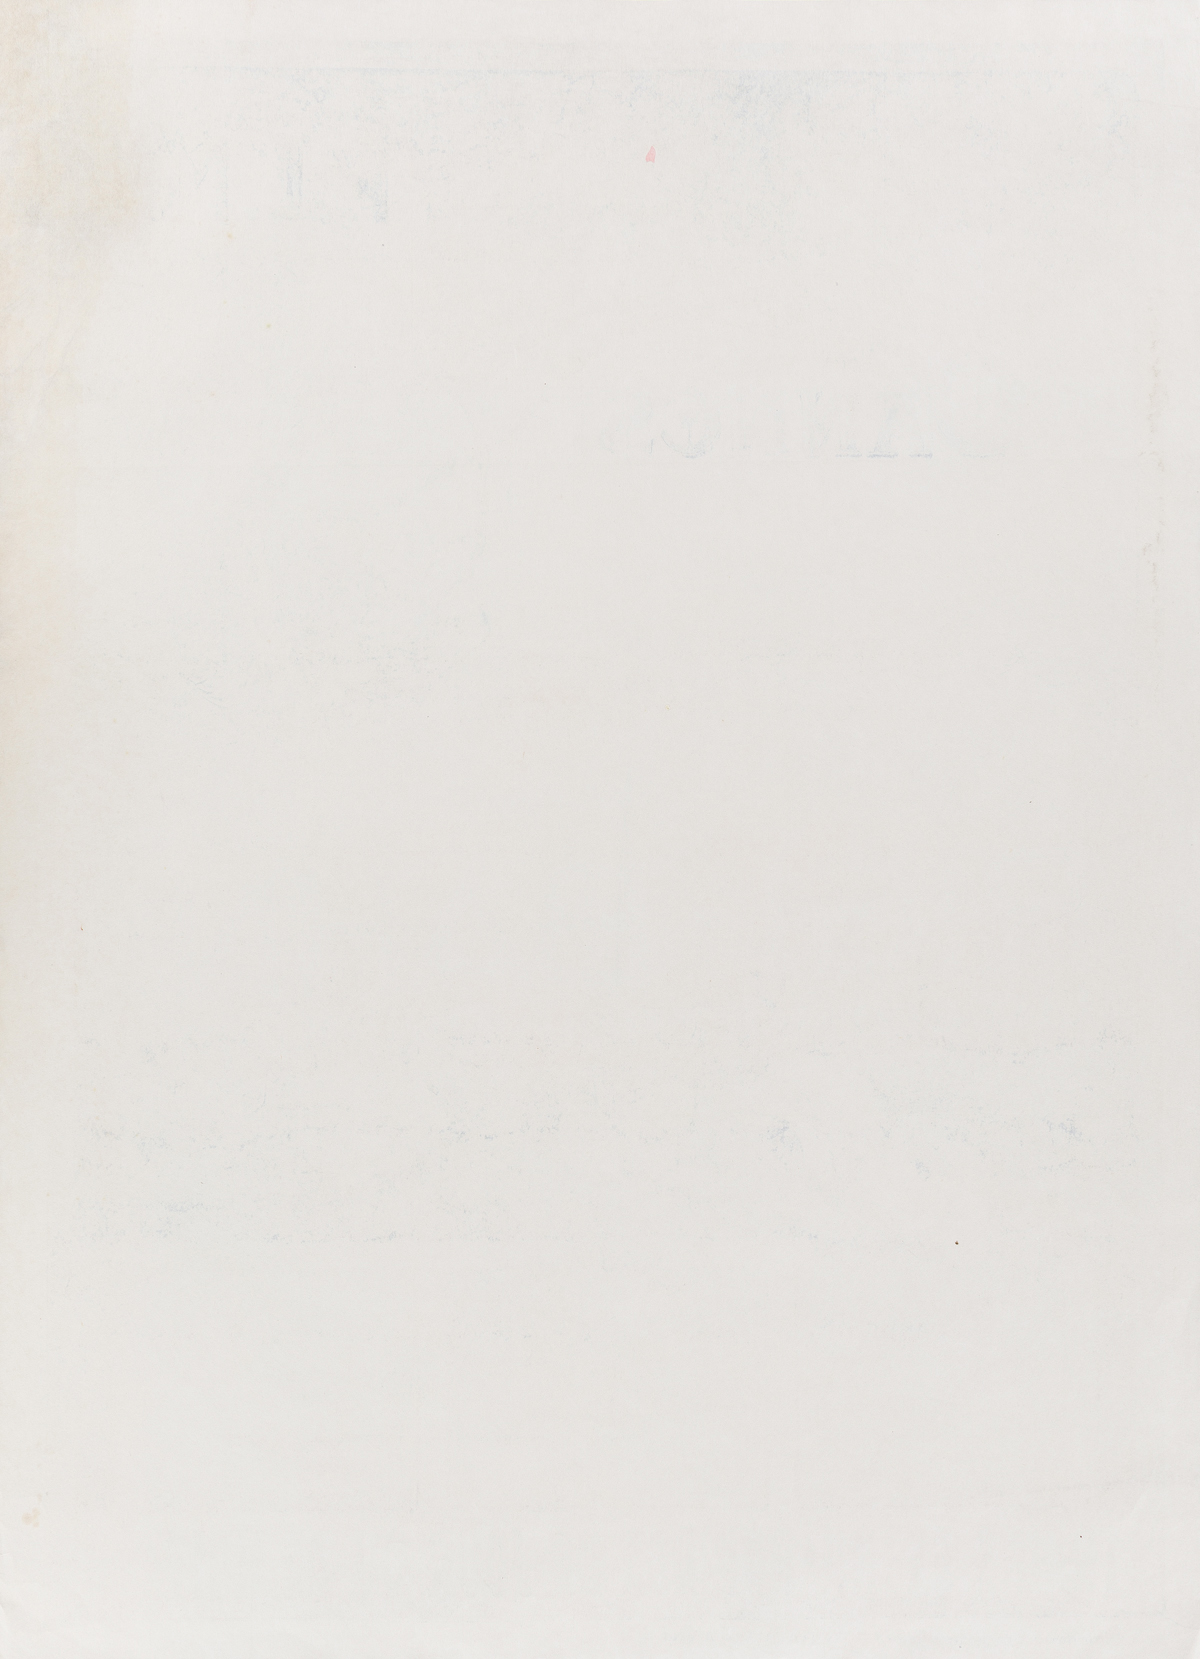 Francis de Signori (Dates Unknown).  CANNES P.L.M. Circa 1910. 42x30 inches, 108x76 cm. Robaudy, Cannes.